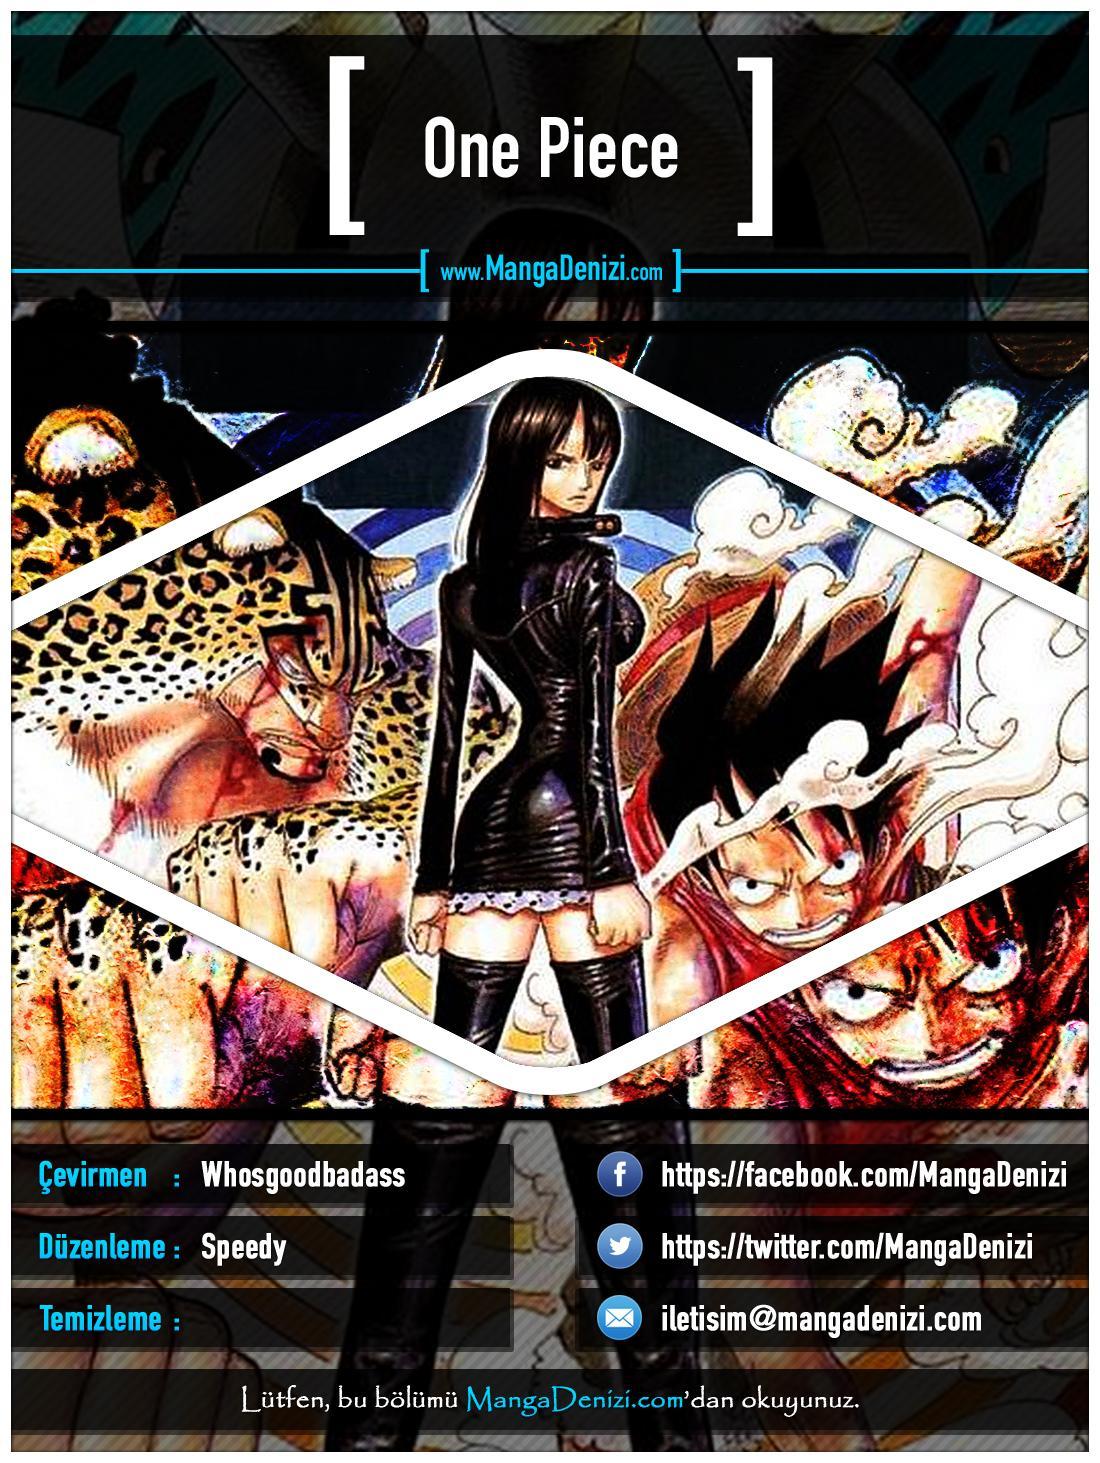 One Piece [Renkli] mangasının 0326 bölümünün 1. sayfasını okuyorsunuz.